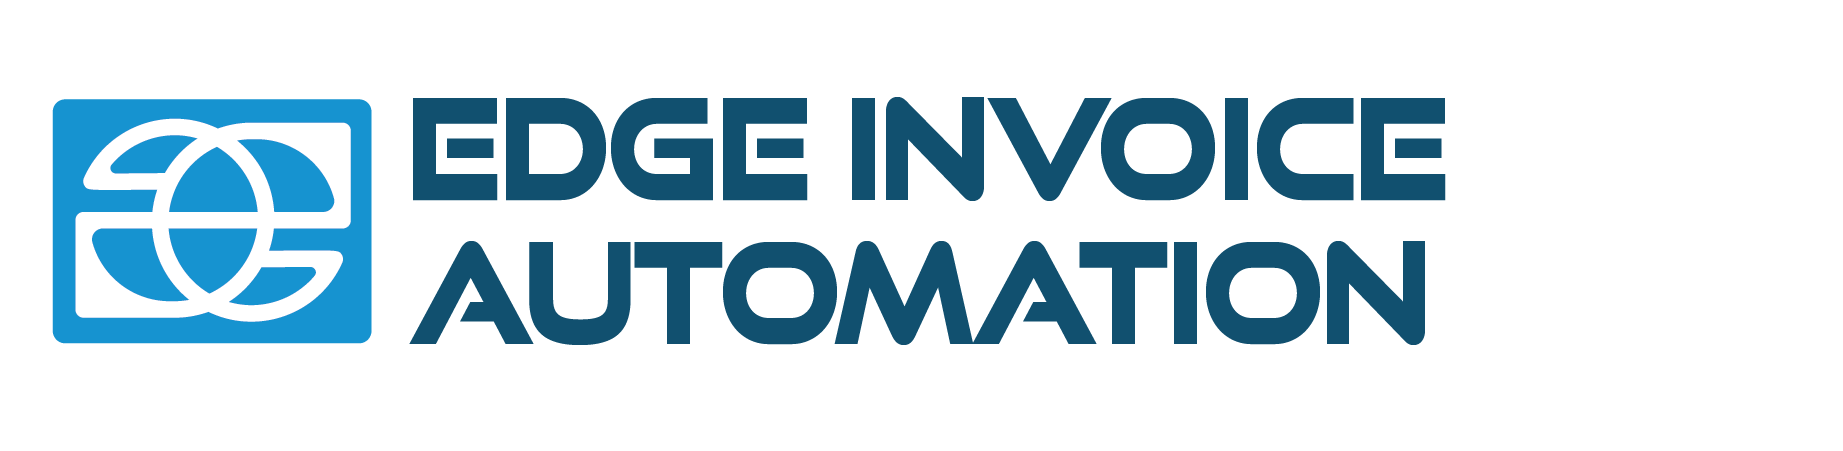 edge invoice automation logo white